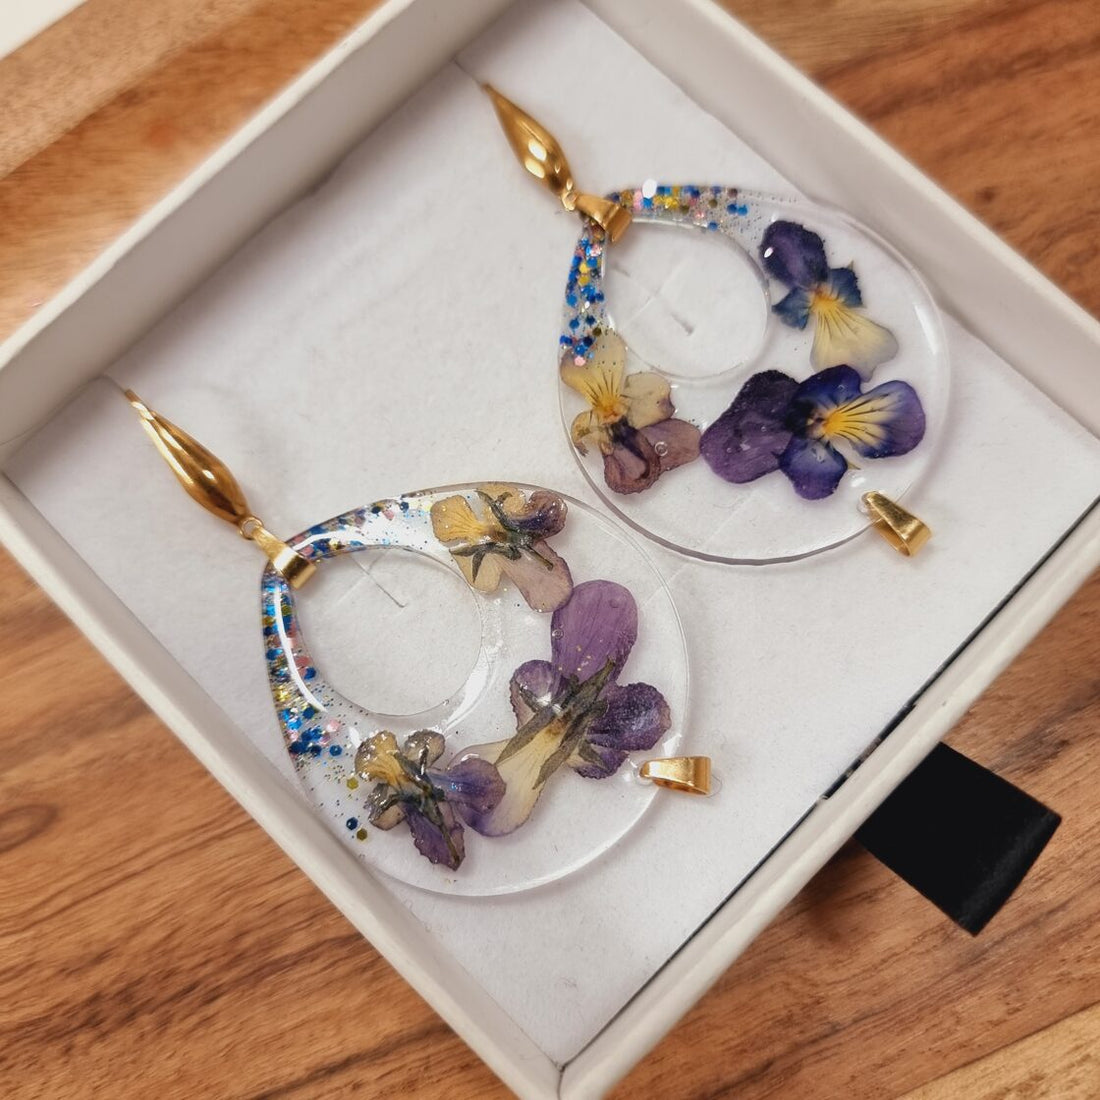 Handmade crystal earrings